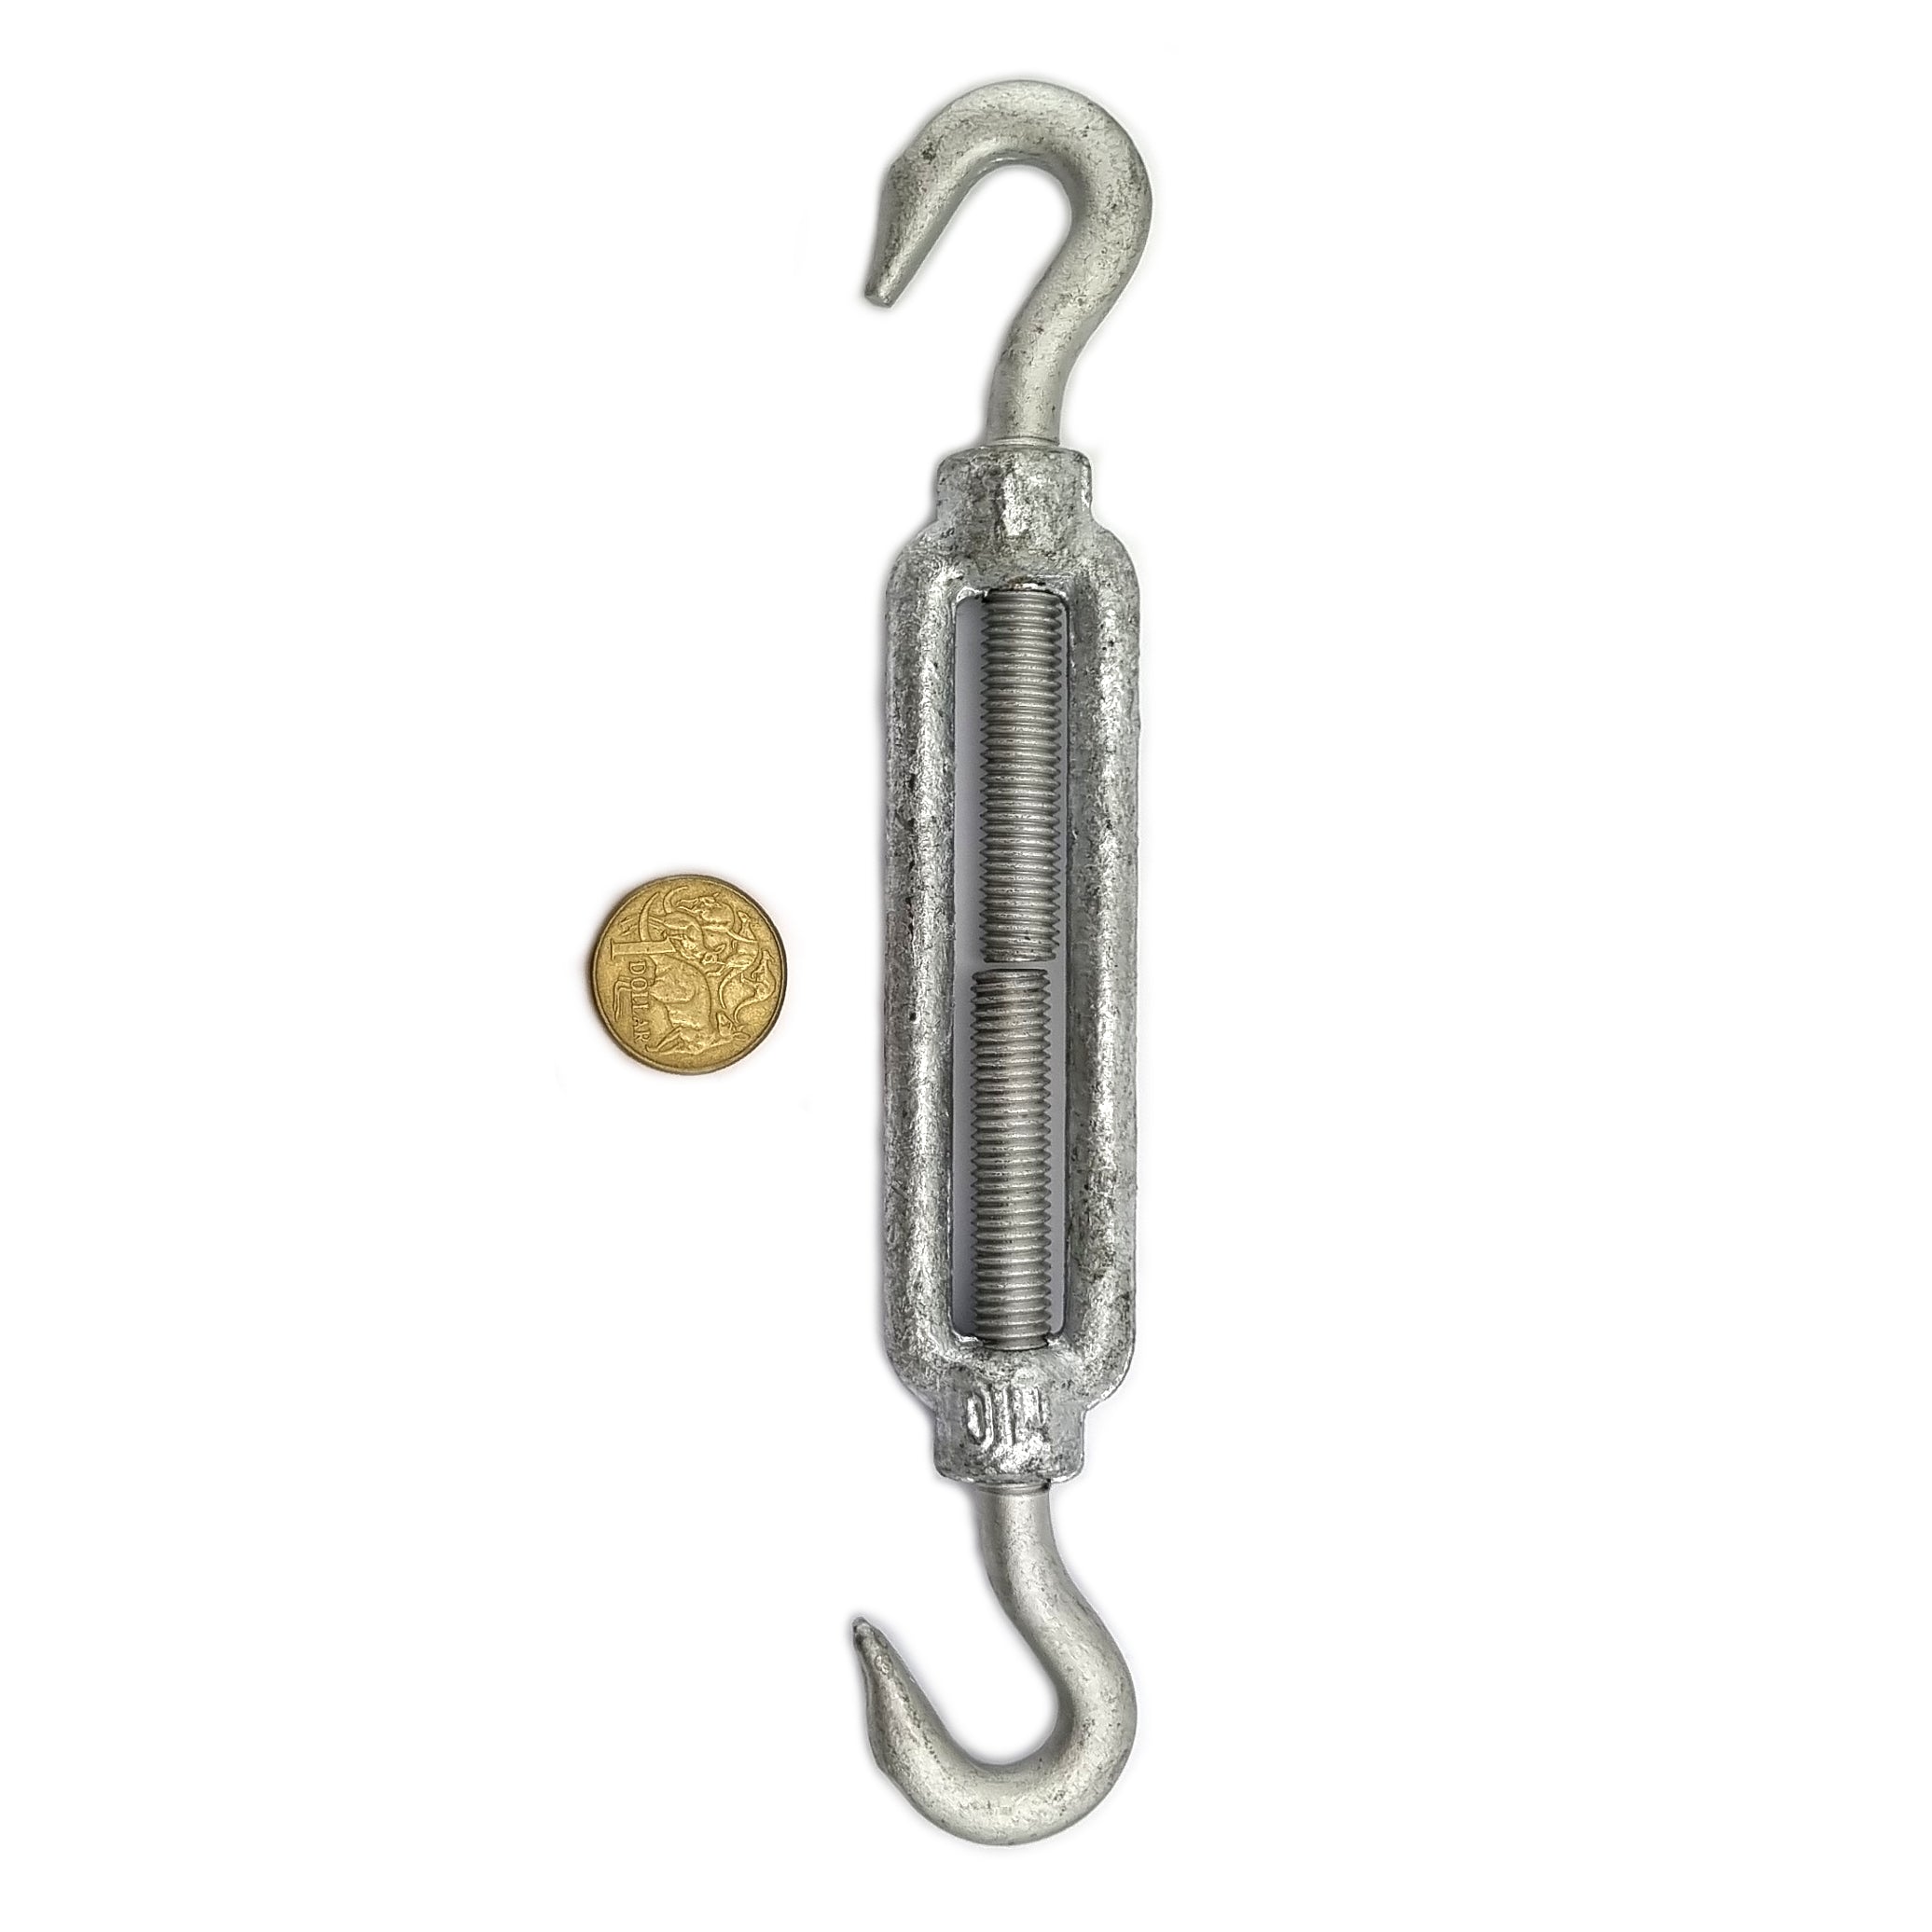 Turnbuckles - Galvanised - Hook-Hook - Size: 10mm. Australia